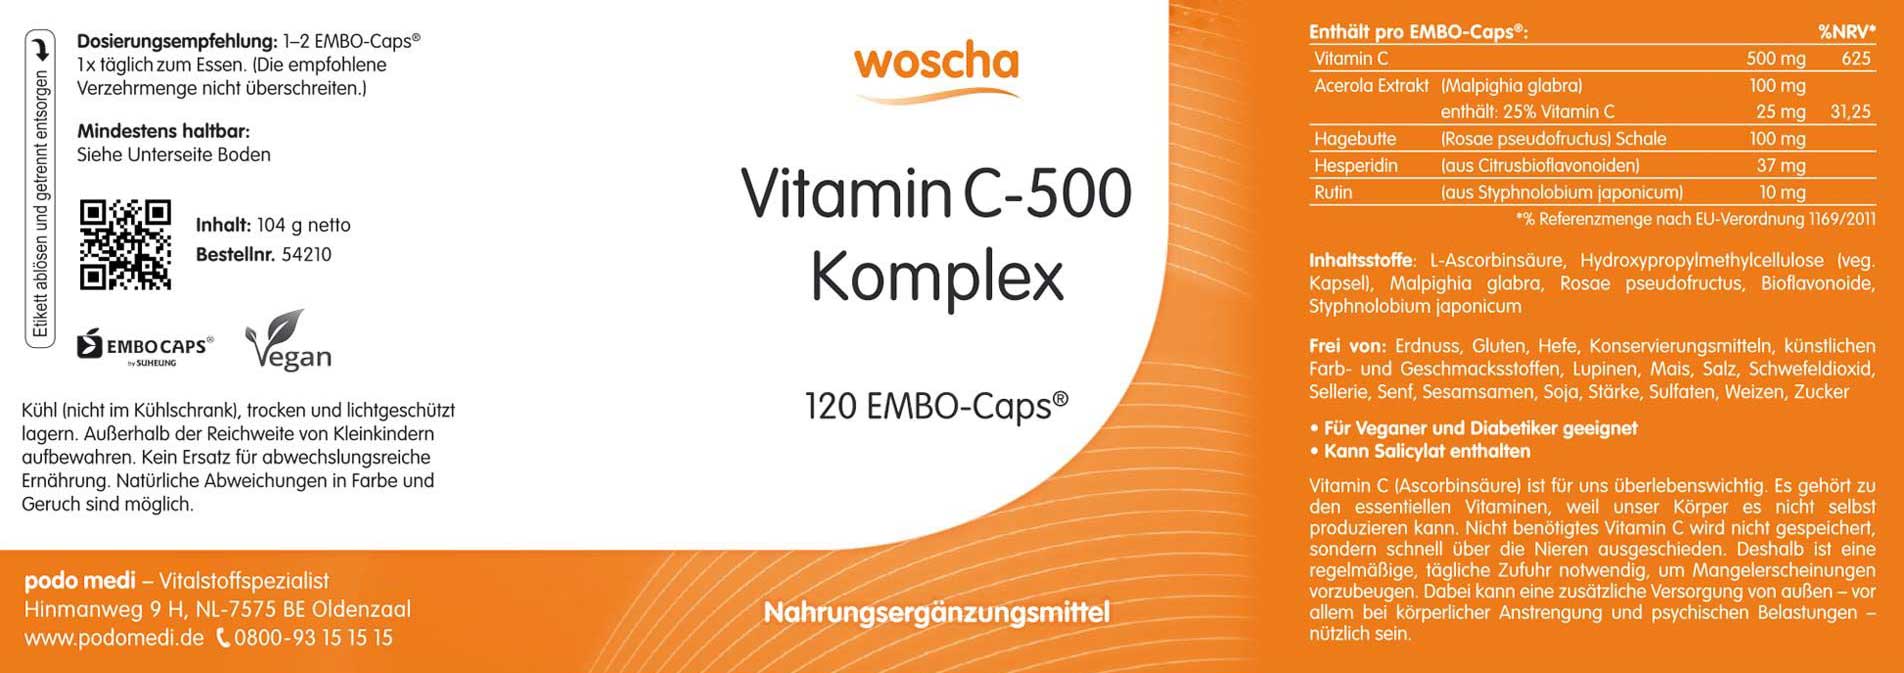 Woscha Vitamin C-500 Komplex von podo medi beinhaltet 120 Kapseln Etikett